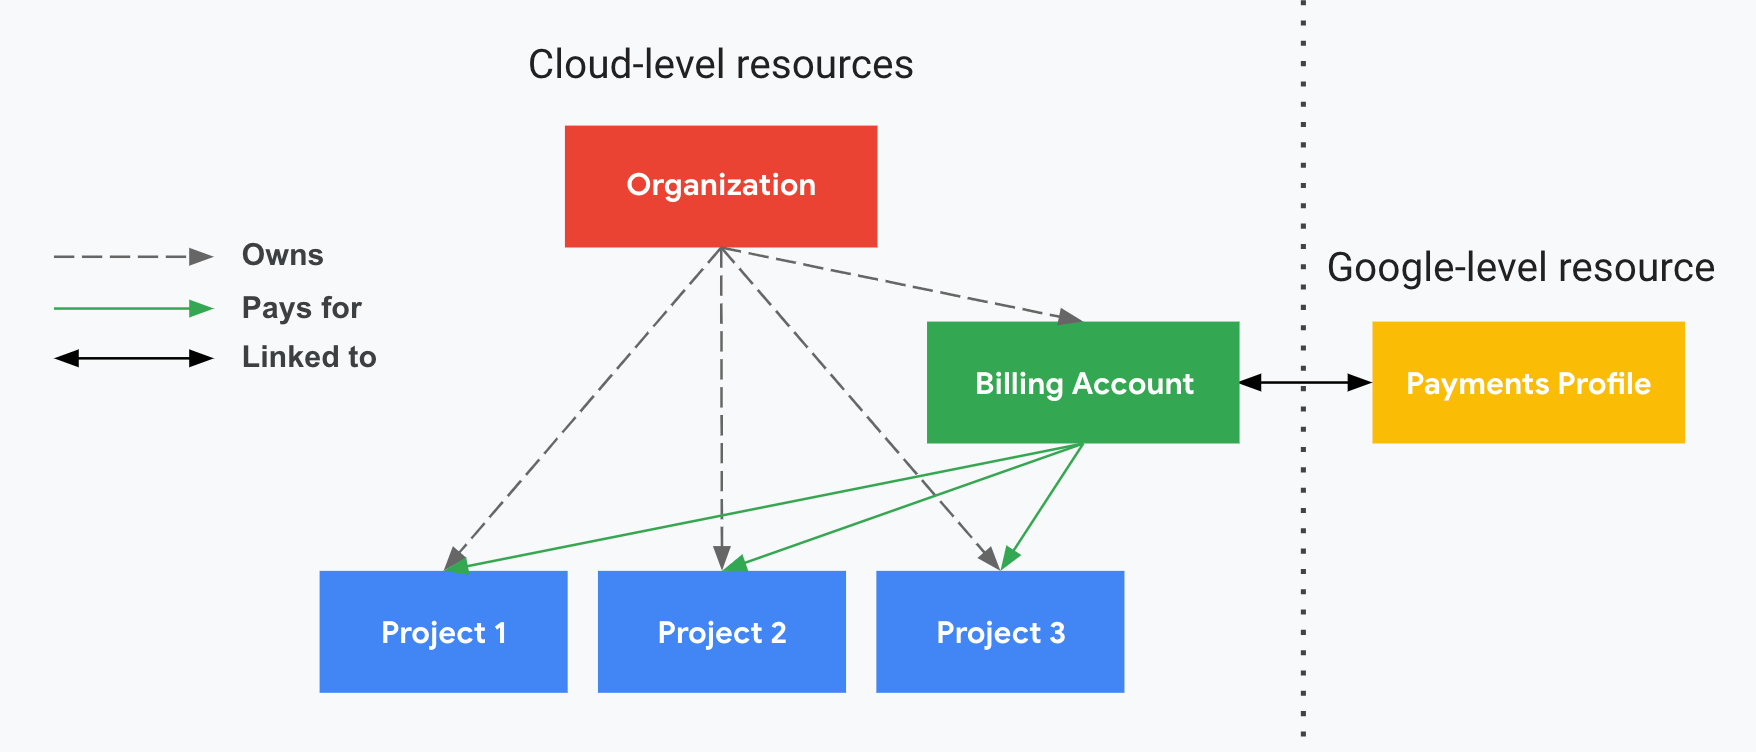 Menjelaskan hubungan antara project dengan akun Penagihan Cloud,
         organisasi, dan profil pembayaran Google Anda. Satu sisi menunjukkan
         resource level Google Cloud (organisasi,
         akun Penagihan Cloud, dan project terkait) dan sisi
         lainnya, yang dibagi dengan garis putus-putus vertikal, menampilkan resource
         level Google (profil pembayaran Google). Project Anda dibayar melalui
         akun Penagihan Cloud yang ditautkan ke
         profil pembayaran Google. Organisasi mengontrol kepemilikan
         akun Penagihan Cloud menggunakan IAM.